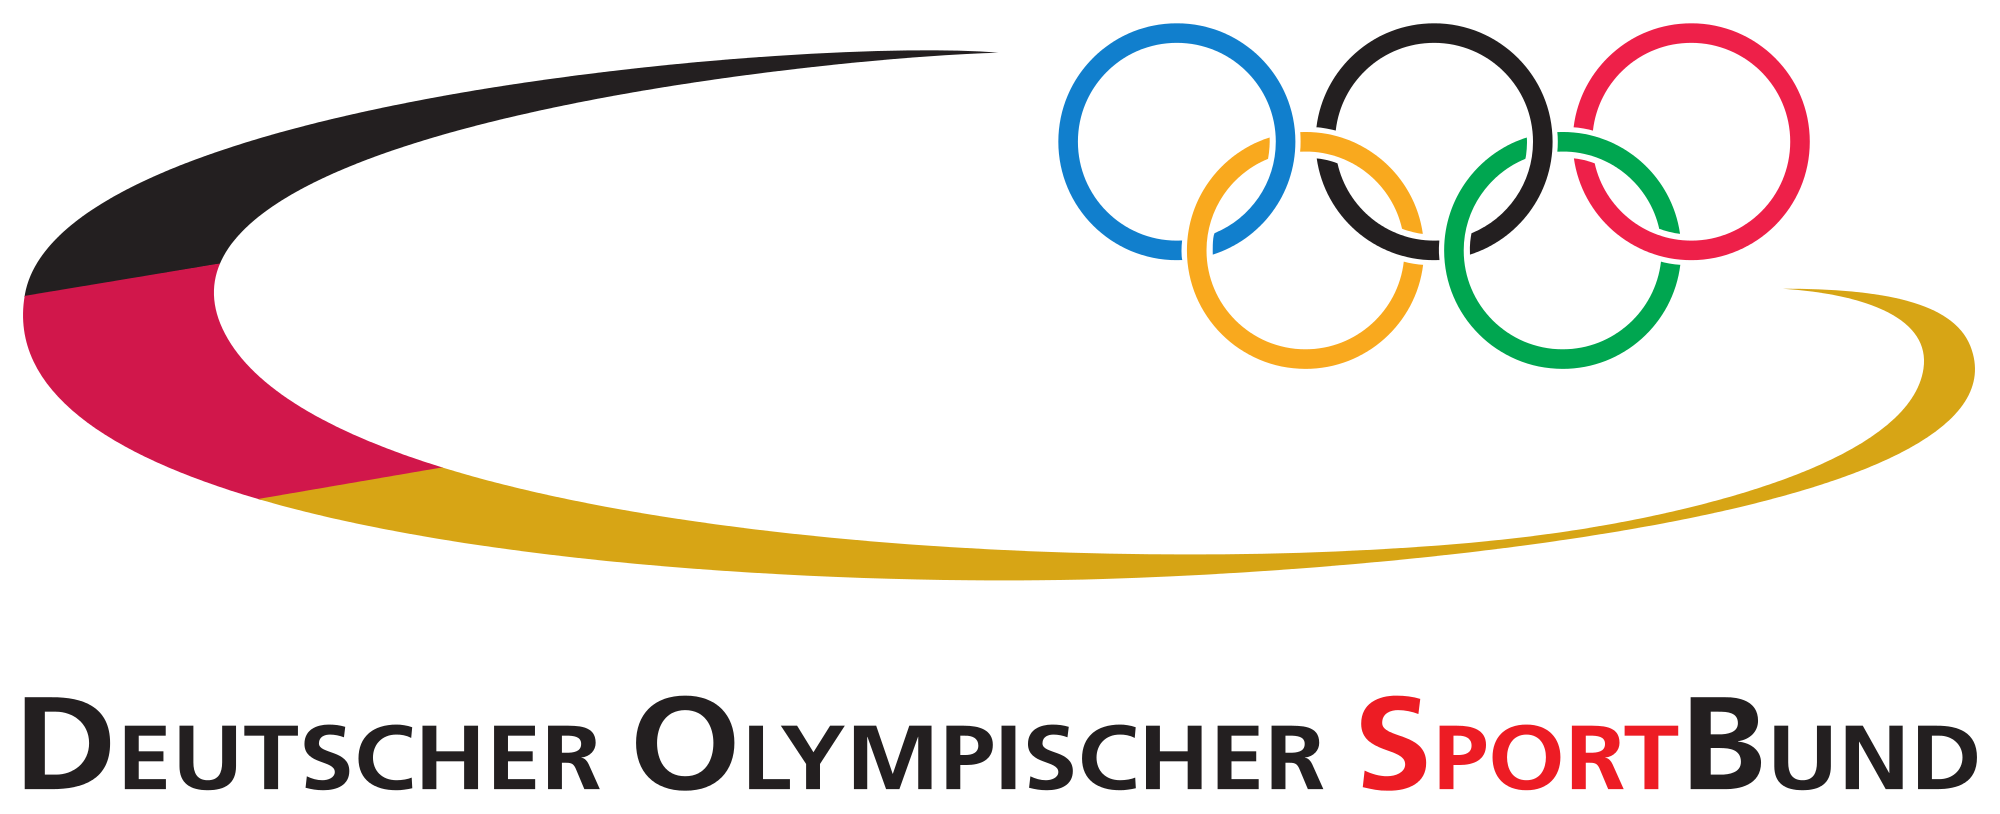 Datei:logo Deutscher Olympischer Sportbund.svg - Dosb, Transparent background PNG HD thumbnail